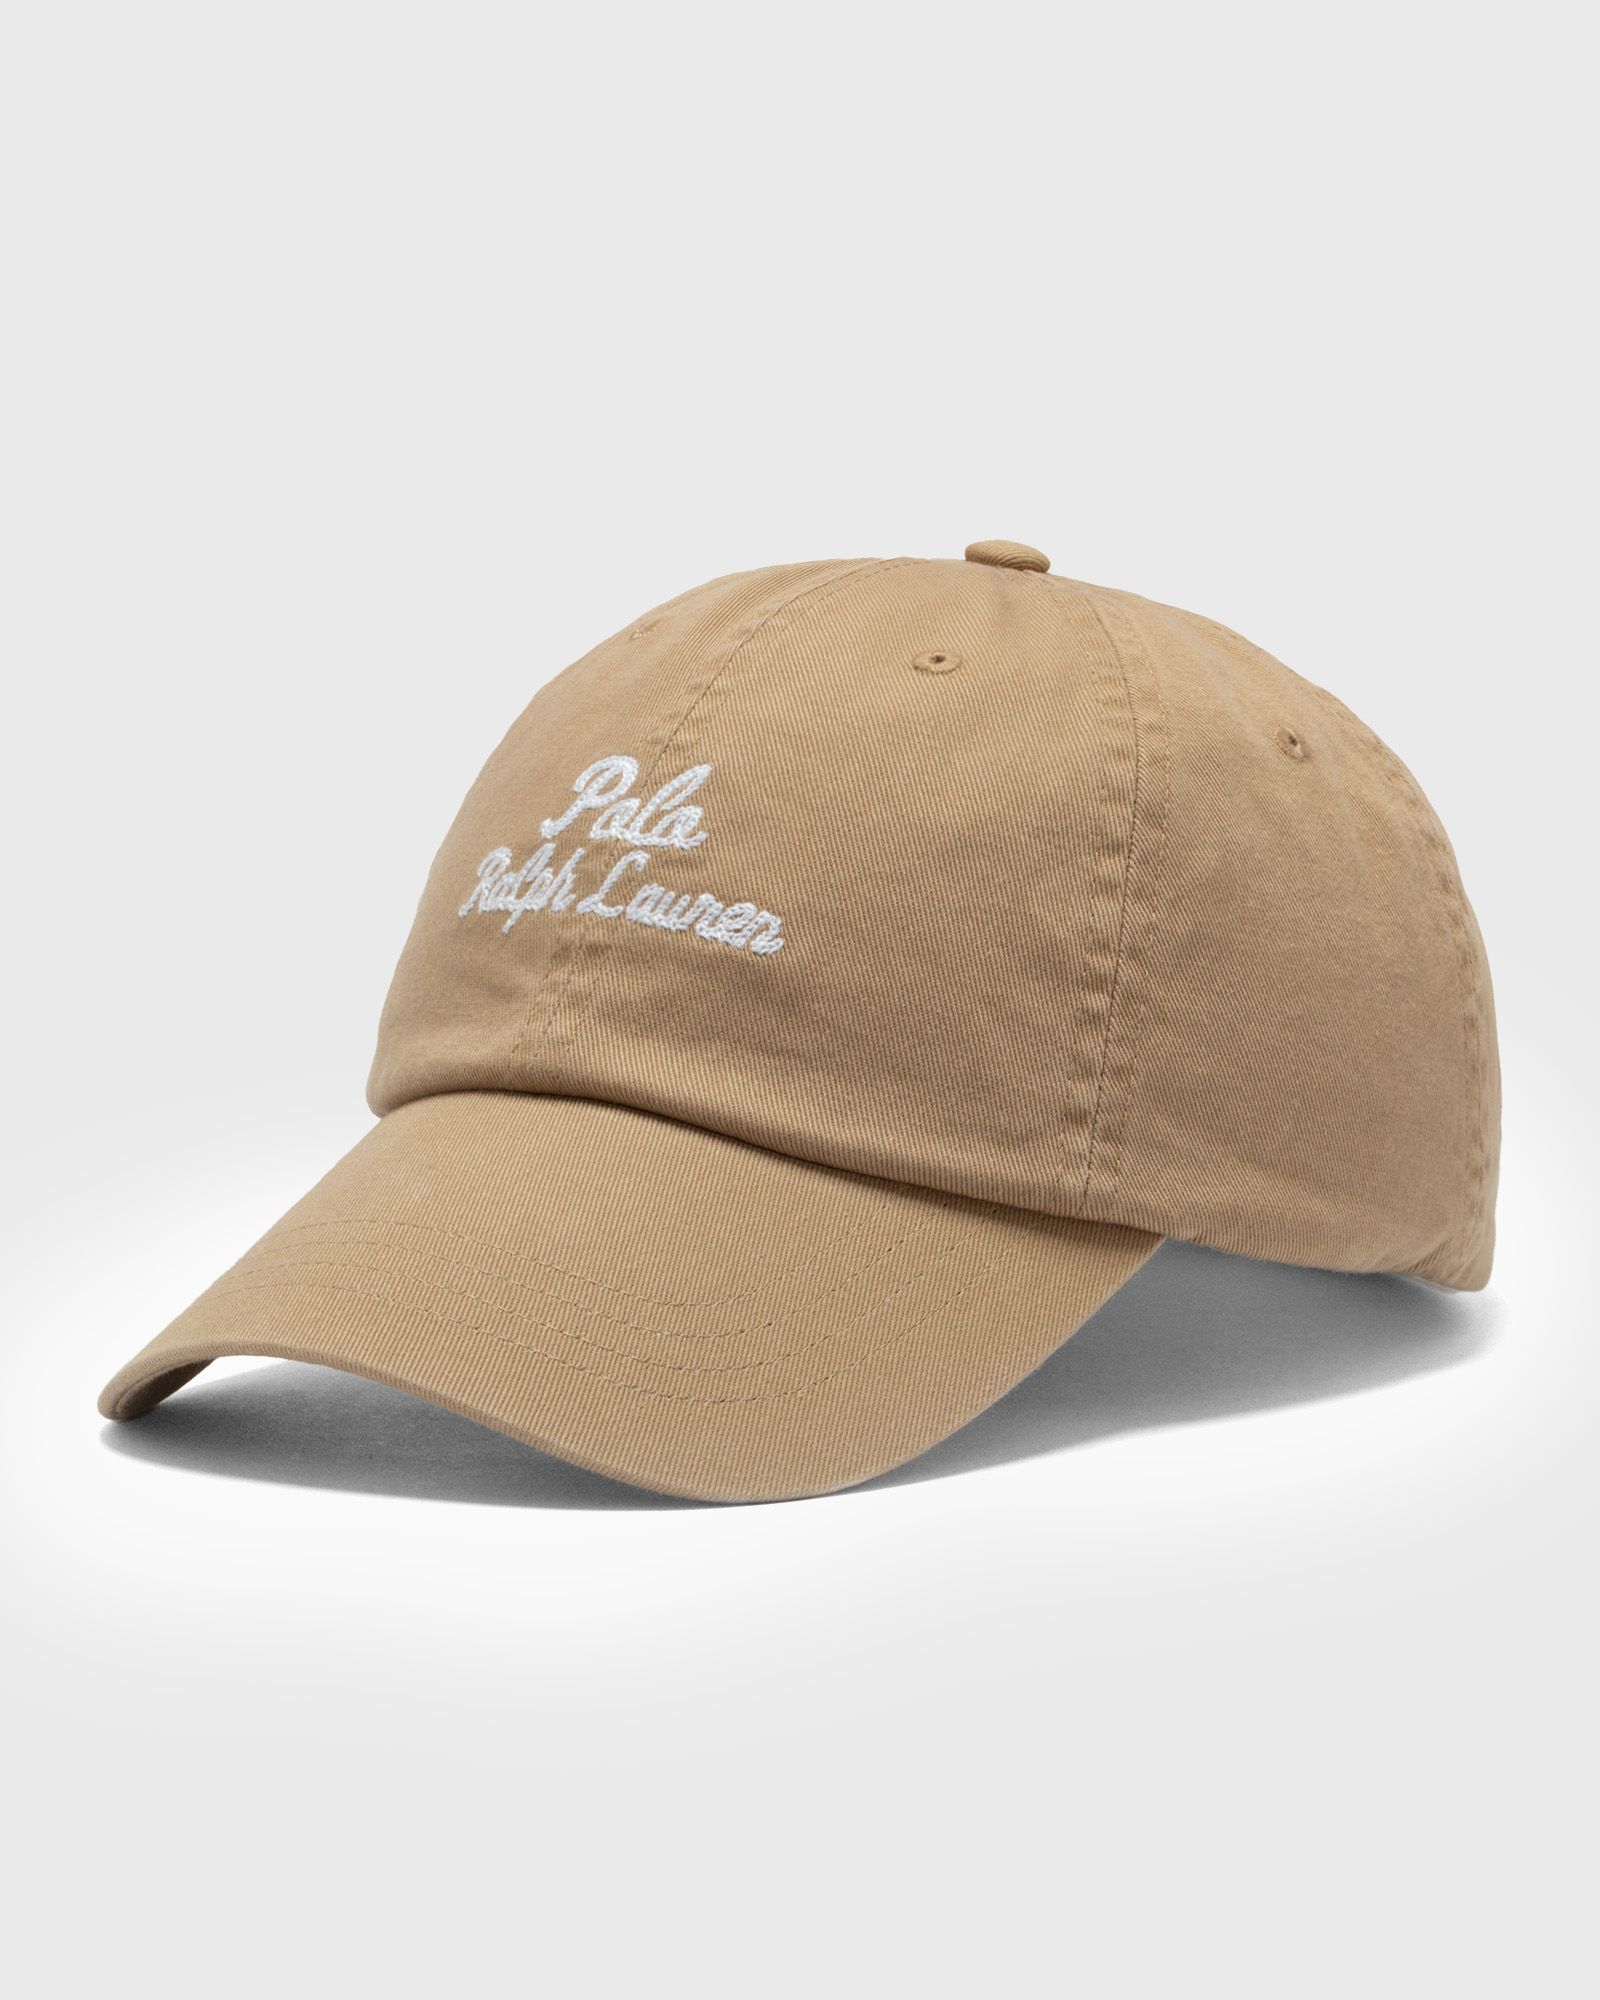 Polo Ralph Lauren - cls sprt cap-cap-hat men caps brown in größe:one size